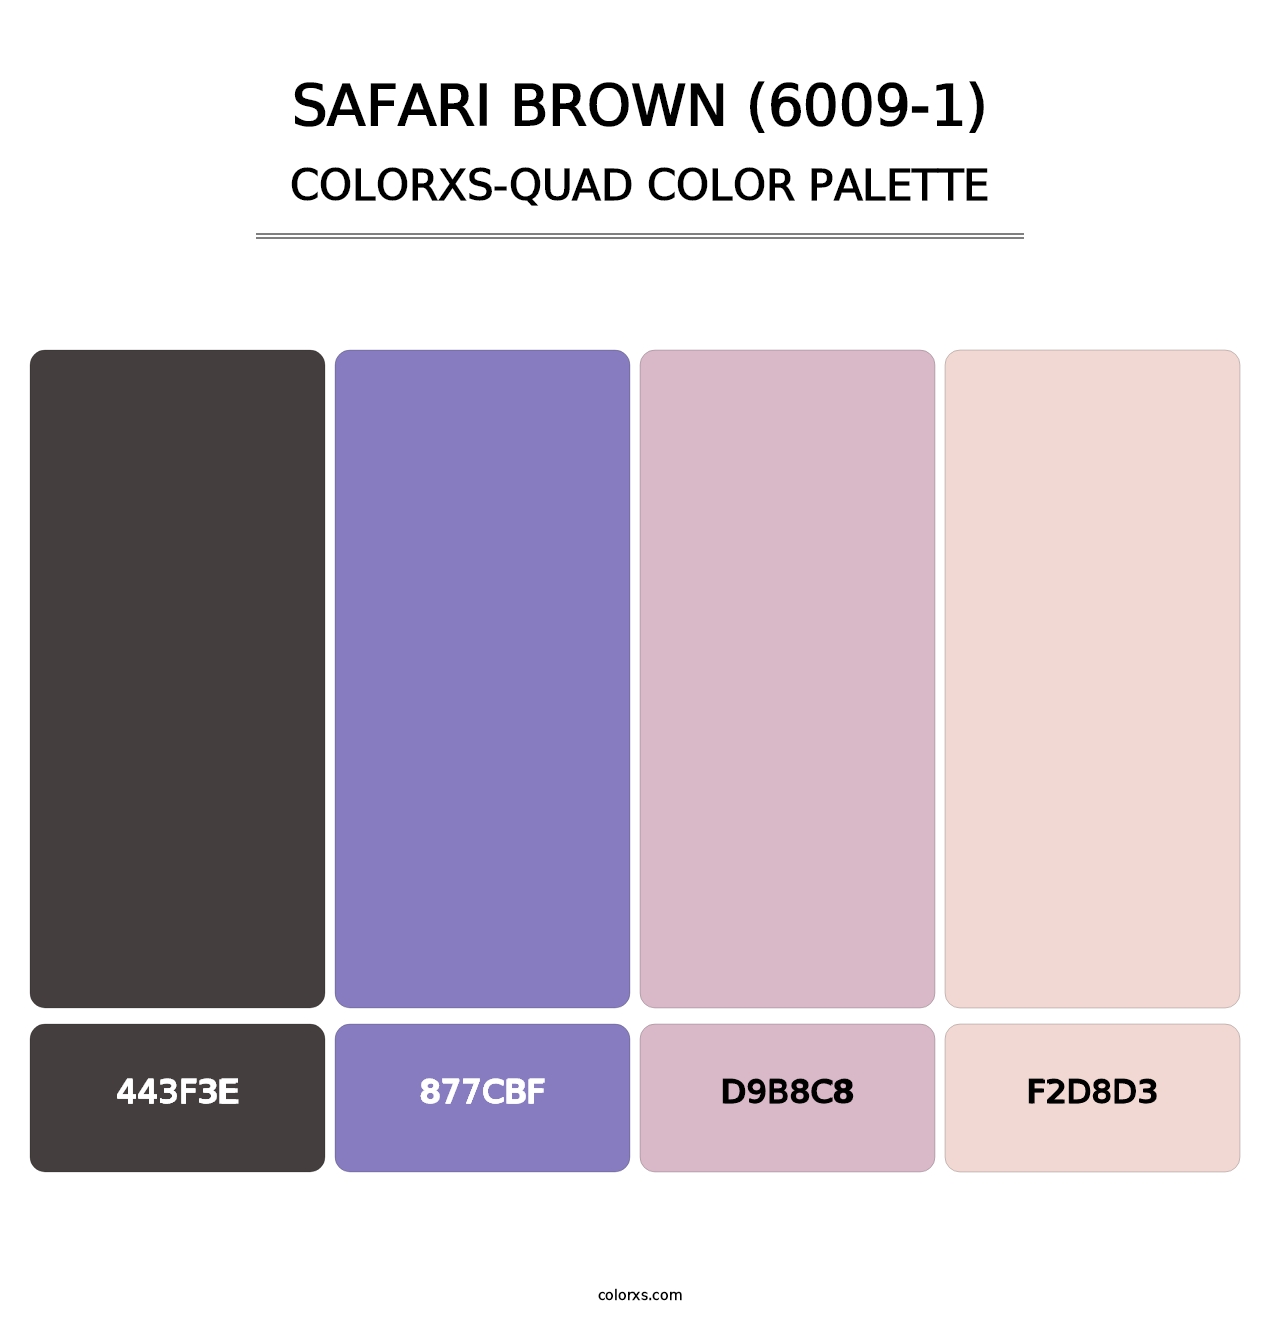 Safari Brown (6009-1) - Colorxs Quad Palette